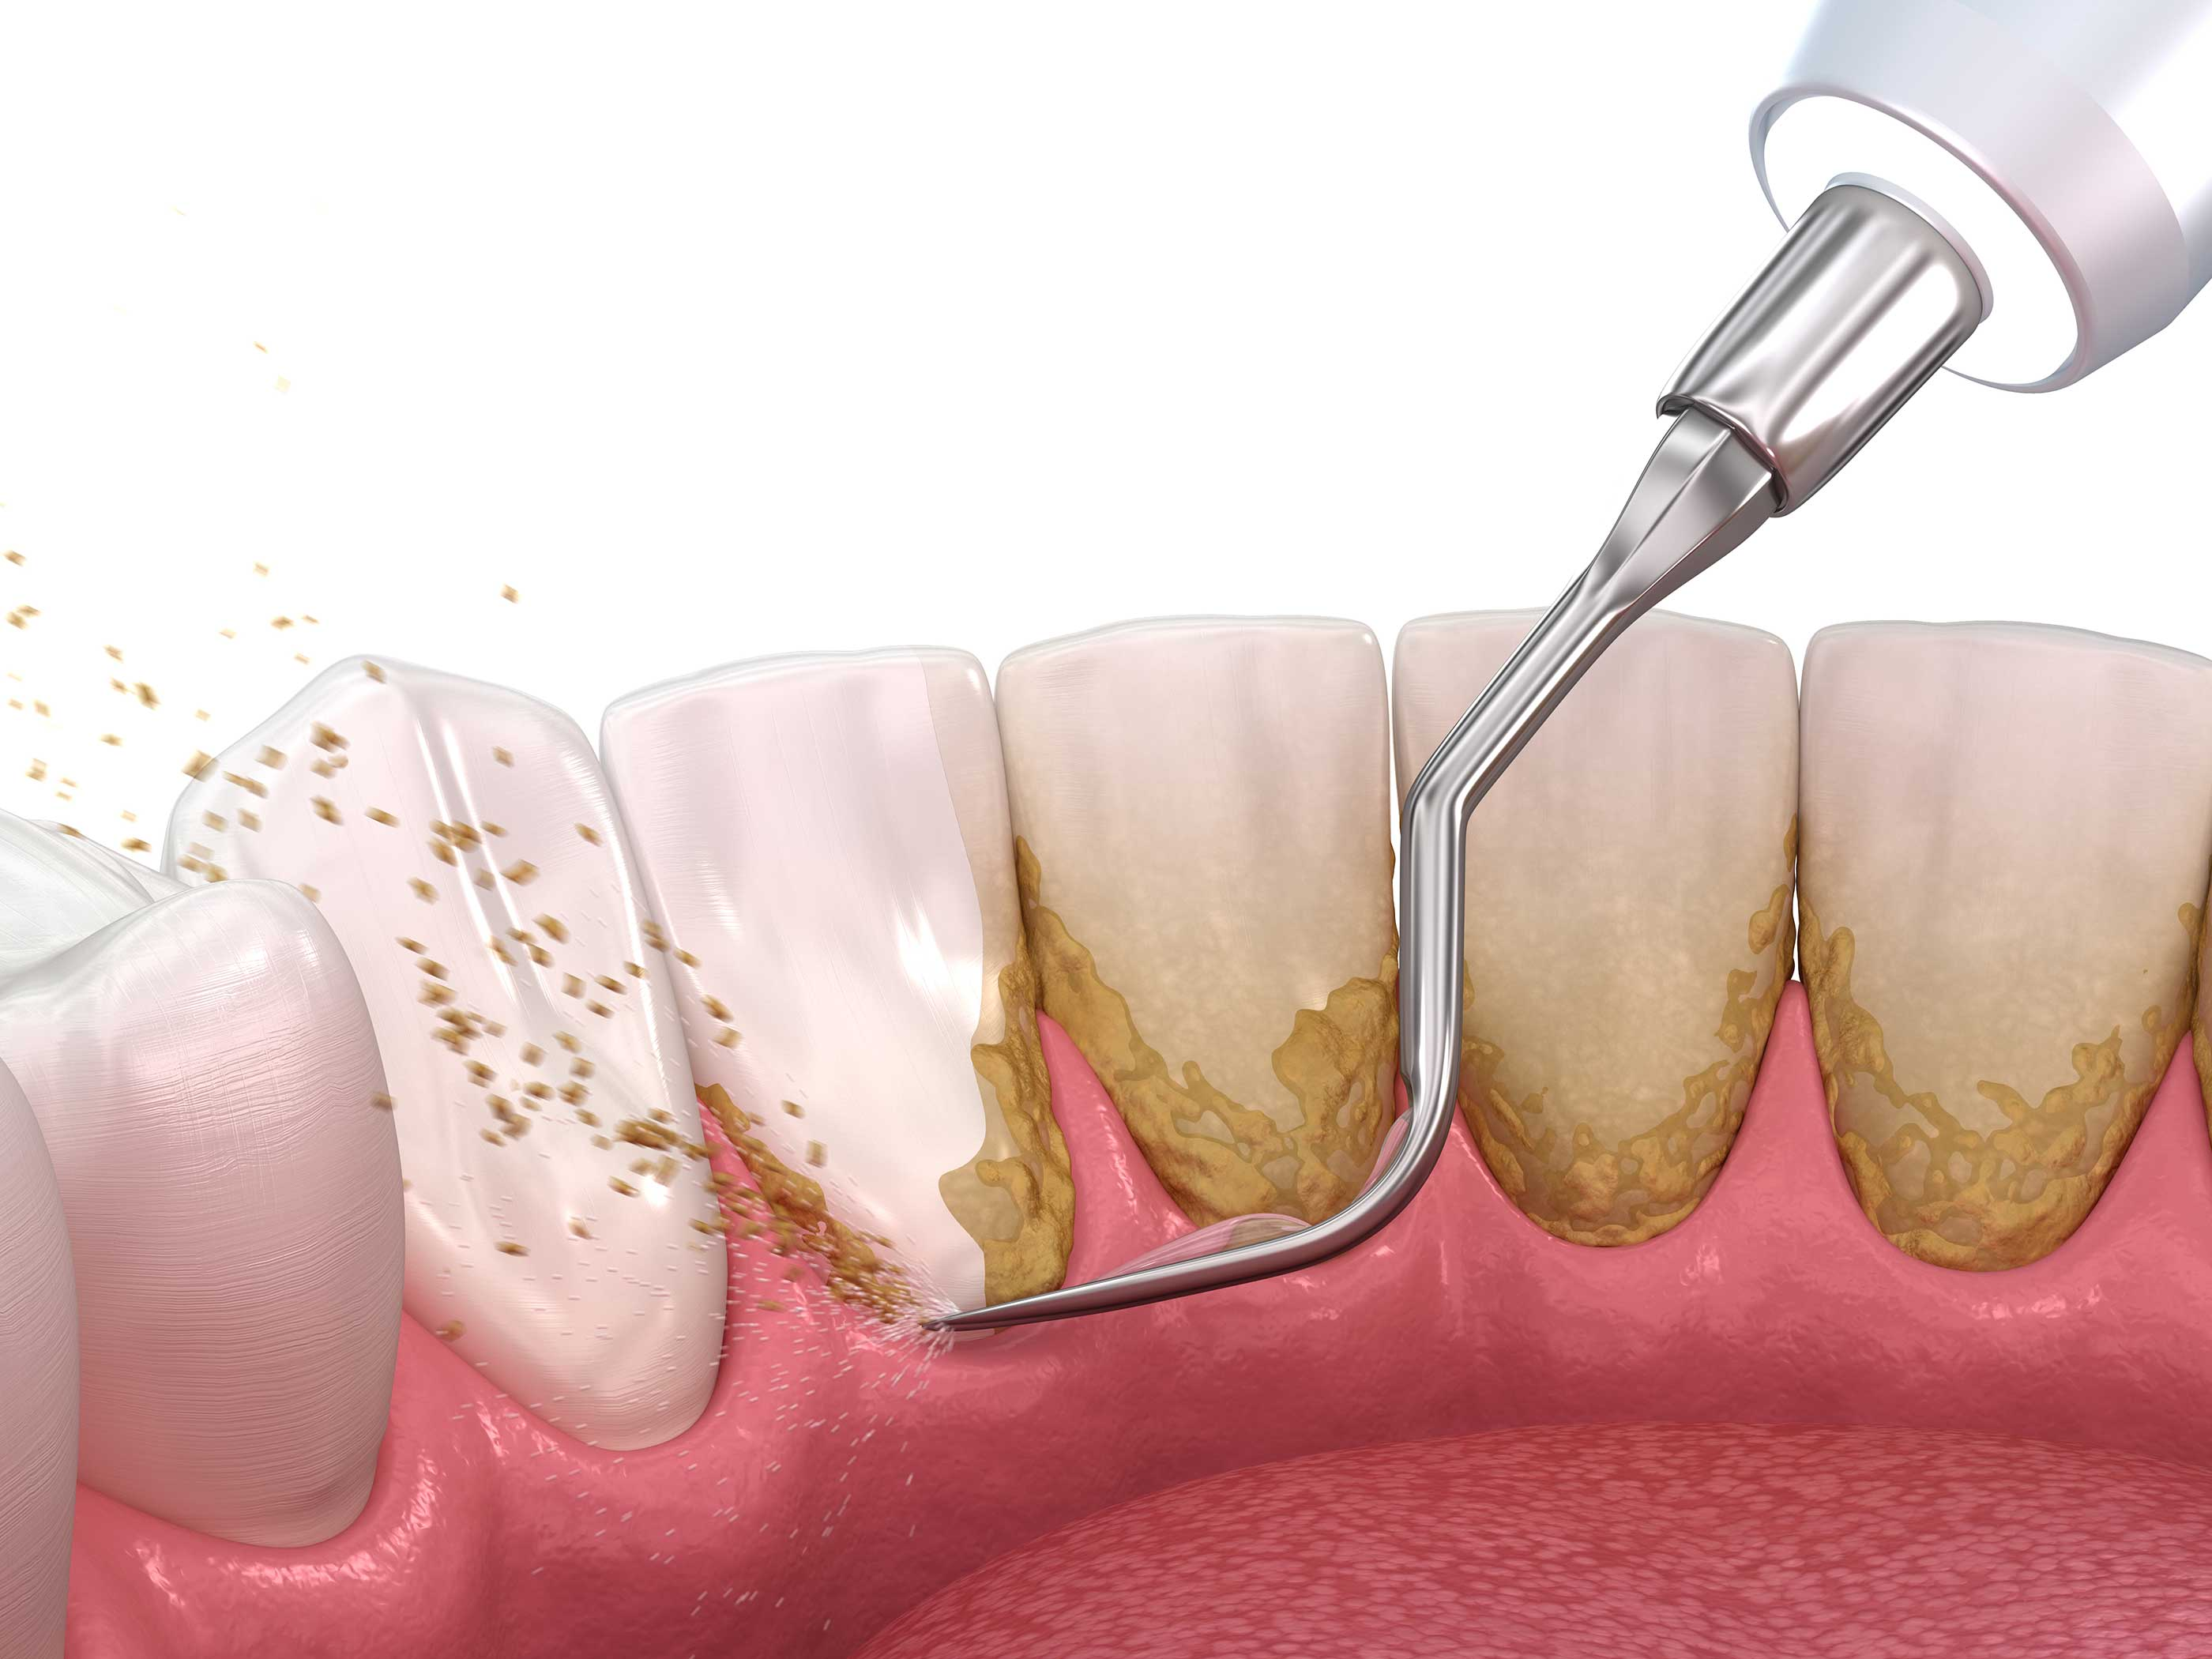 Hos tannlegen kan du fÃ¥ fjernet tannstein